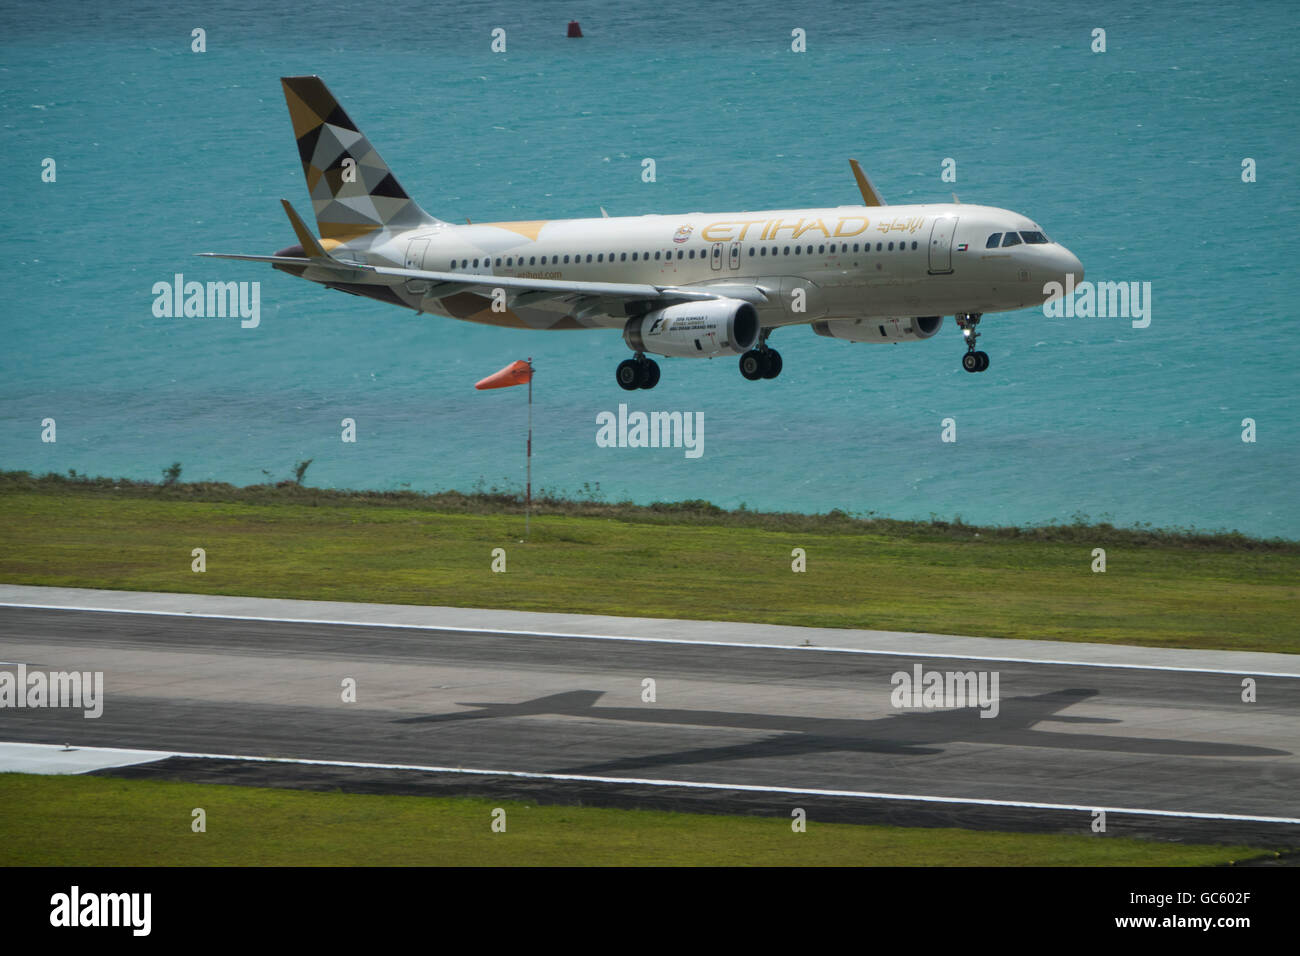 Un Airbus A320 Etihad Airlines jet arrive sur terre à Mahe, Seychelles Banque D'Images